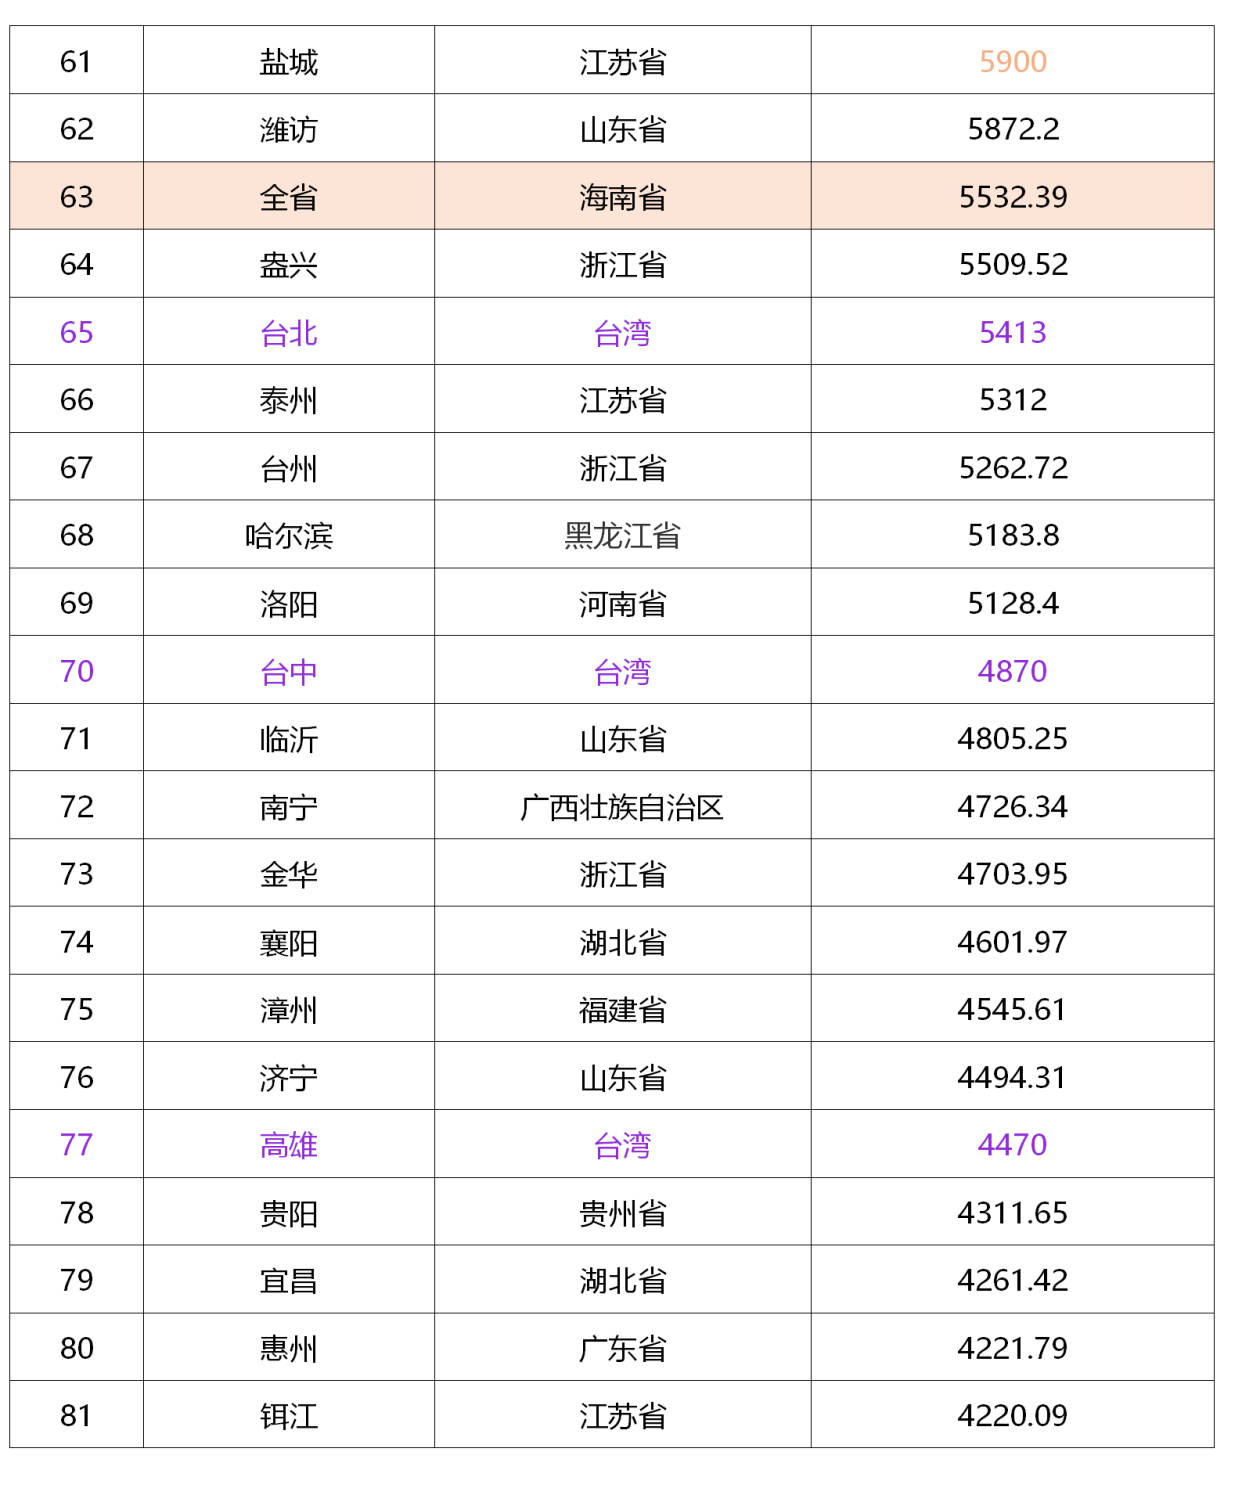 衢州全面年gdp排名2020_2020年GDP百强县排名,如东排这个位置